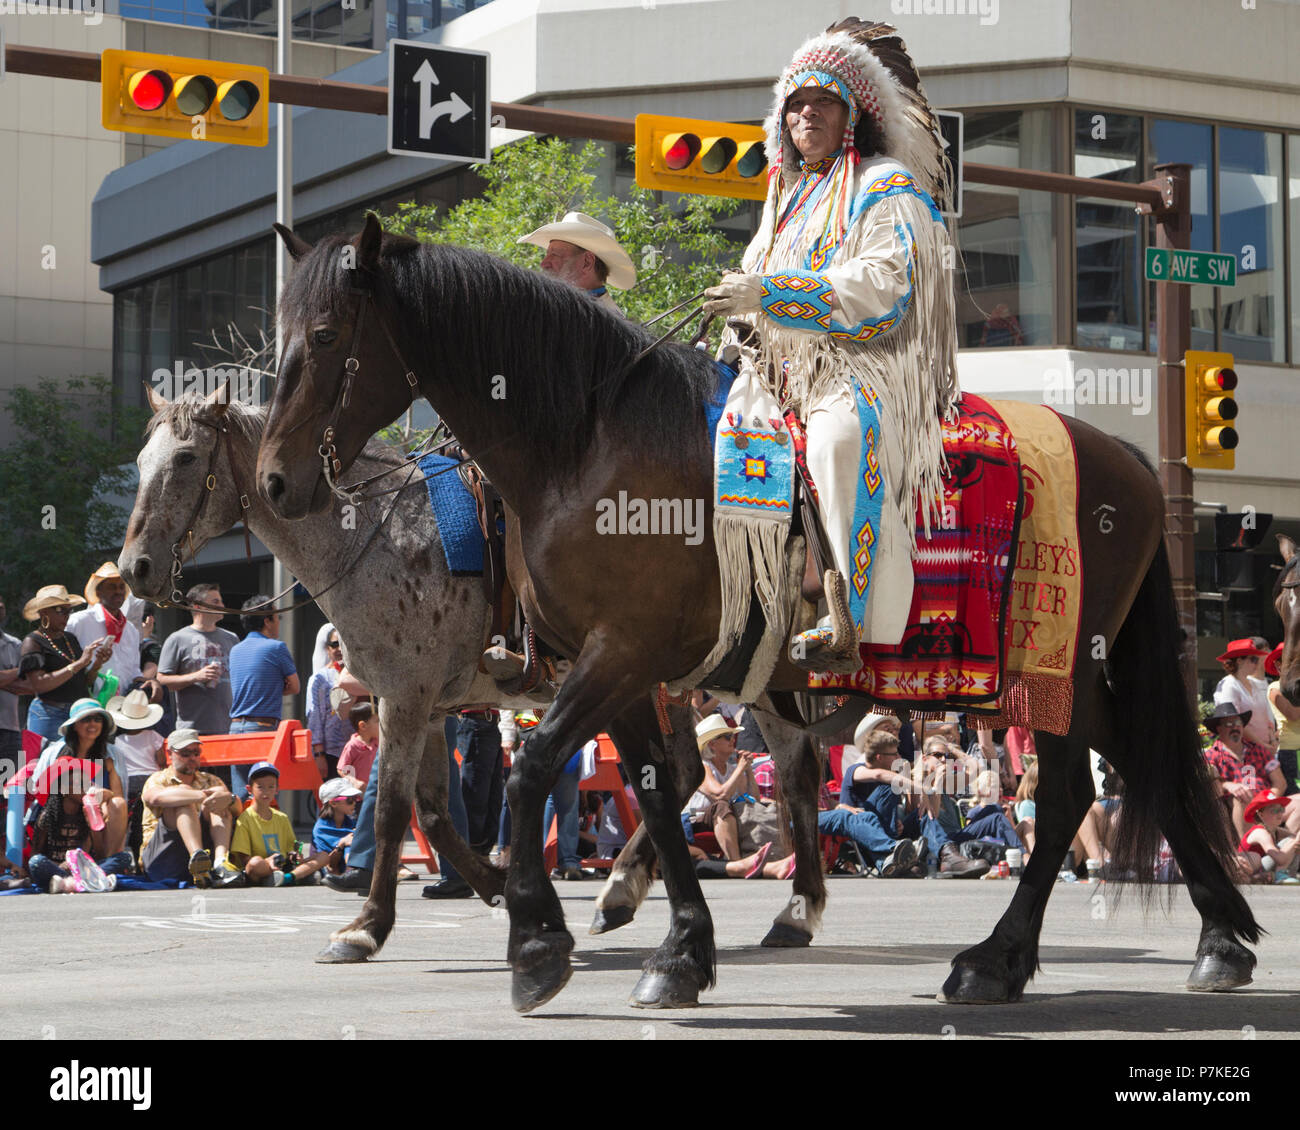 Der Mann in traditioneller einheimischer Kleidung reitet auf dem Pferderücken in der Calgary Stampede Parade. Die Parade durch die Innenstadt beginnt jedes Jahr mit der Calgary Stampede. Alberta, Kanada. Rosanne Tackaberry/Alamy Live News Stockfoto